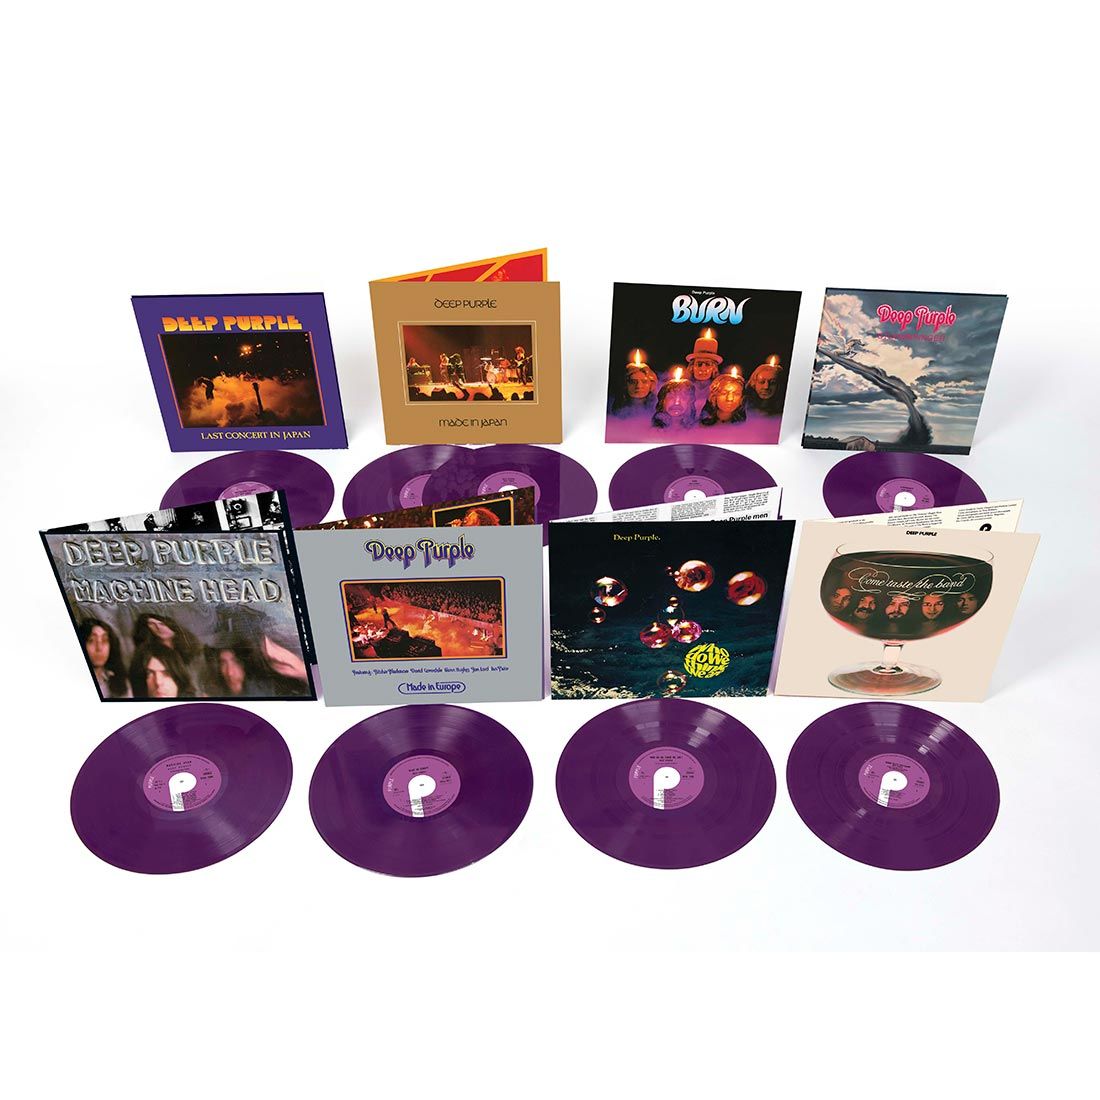 ¡Tenemos lugar y más detalles del concierto de Deep Purple en la CDMX!